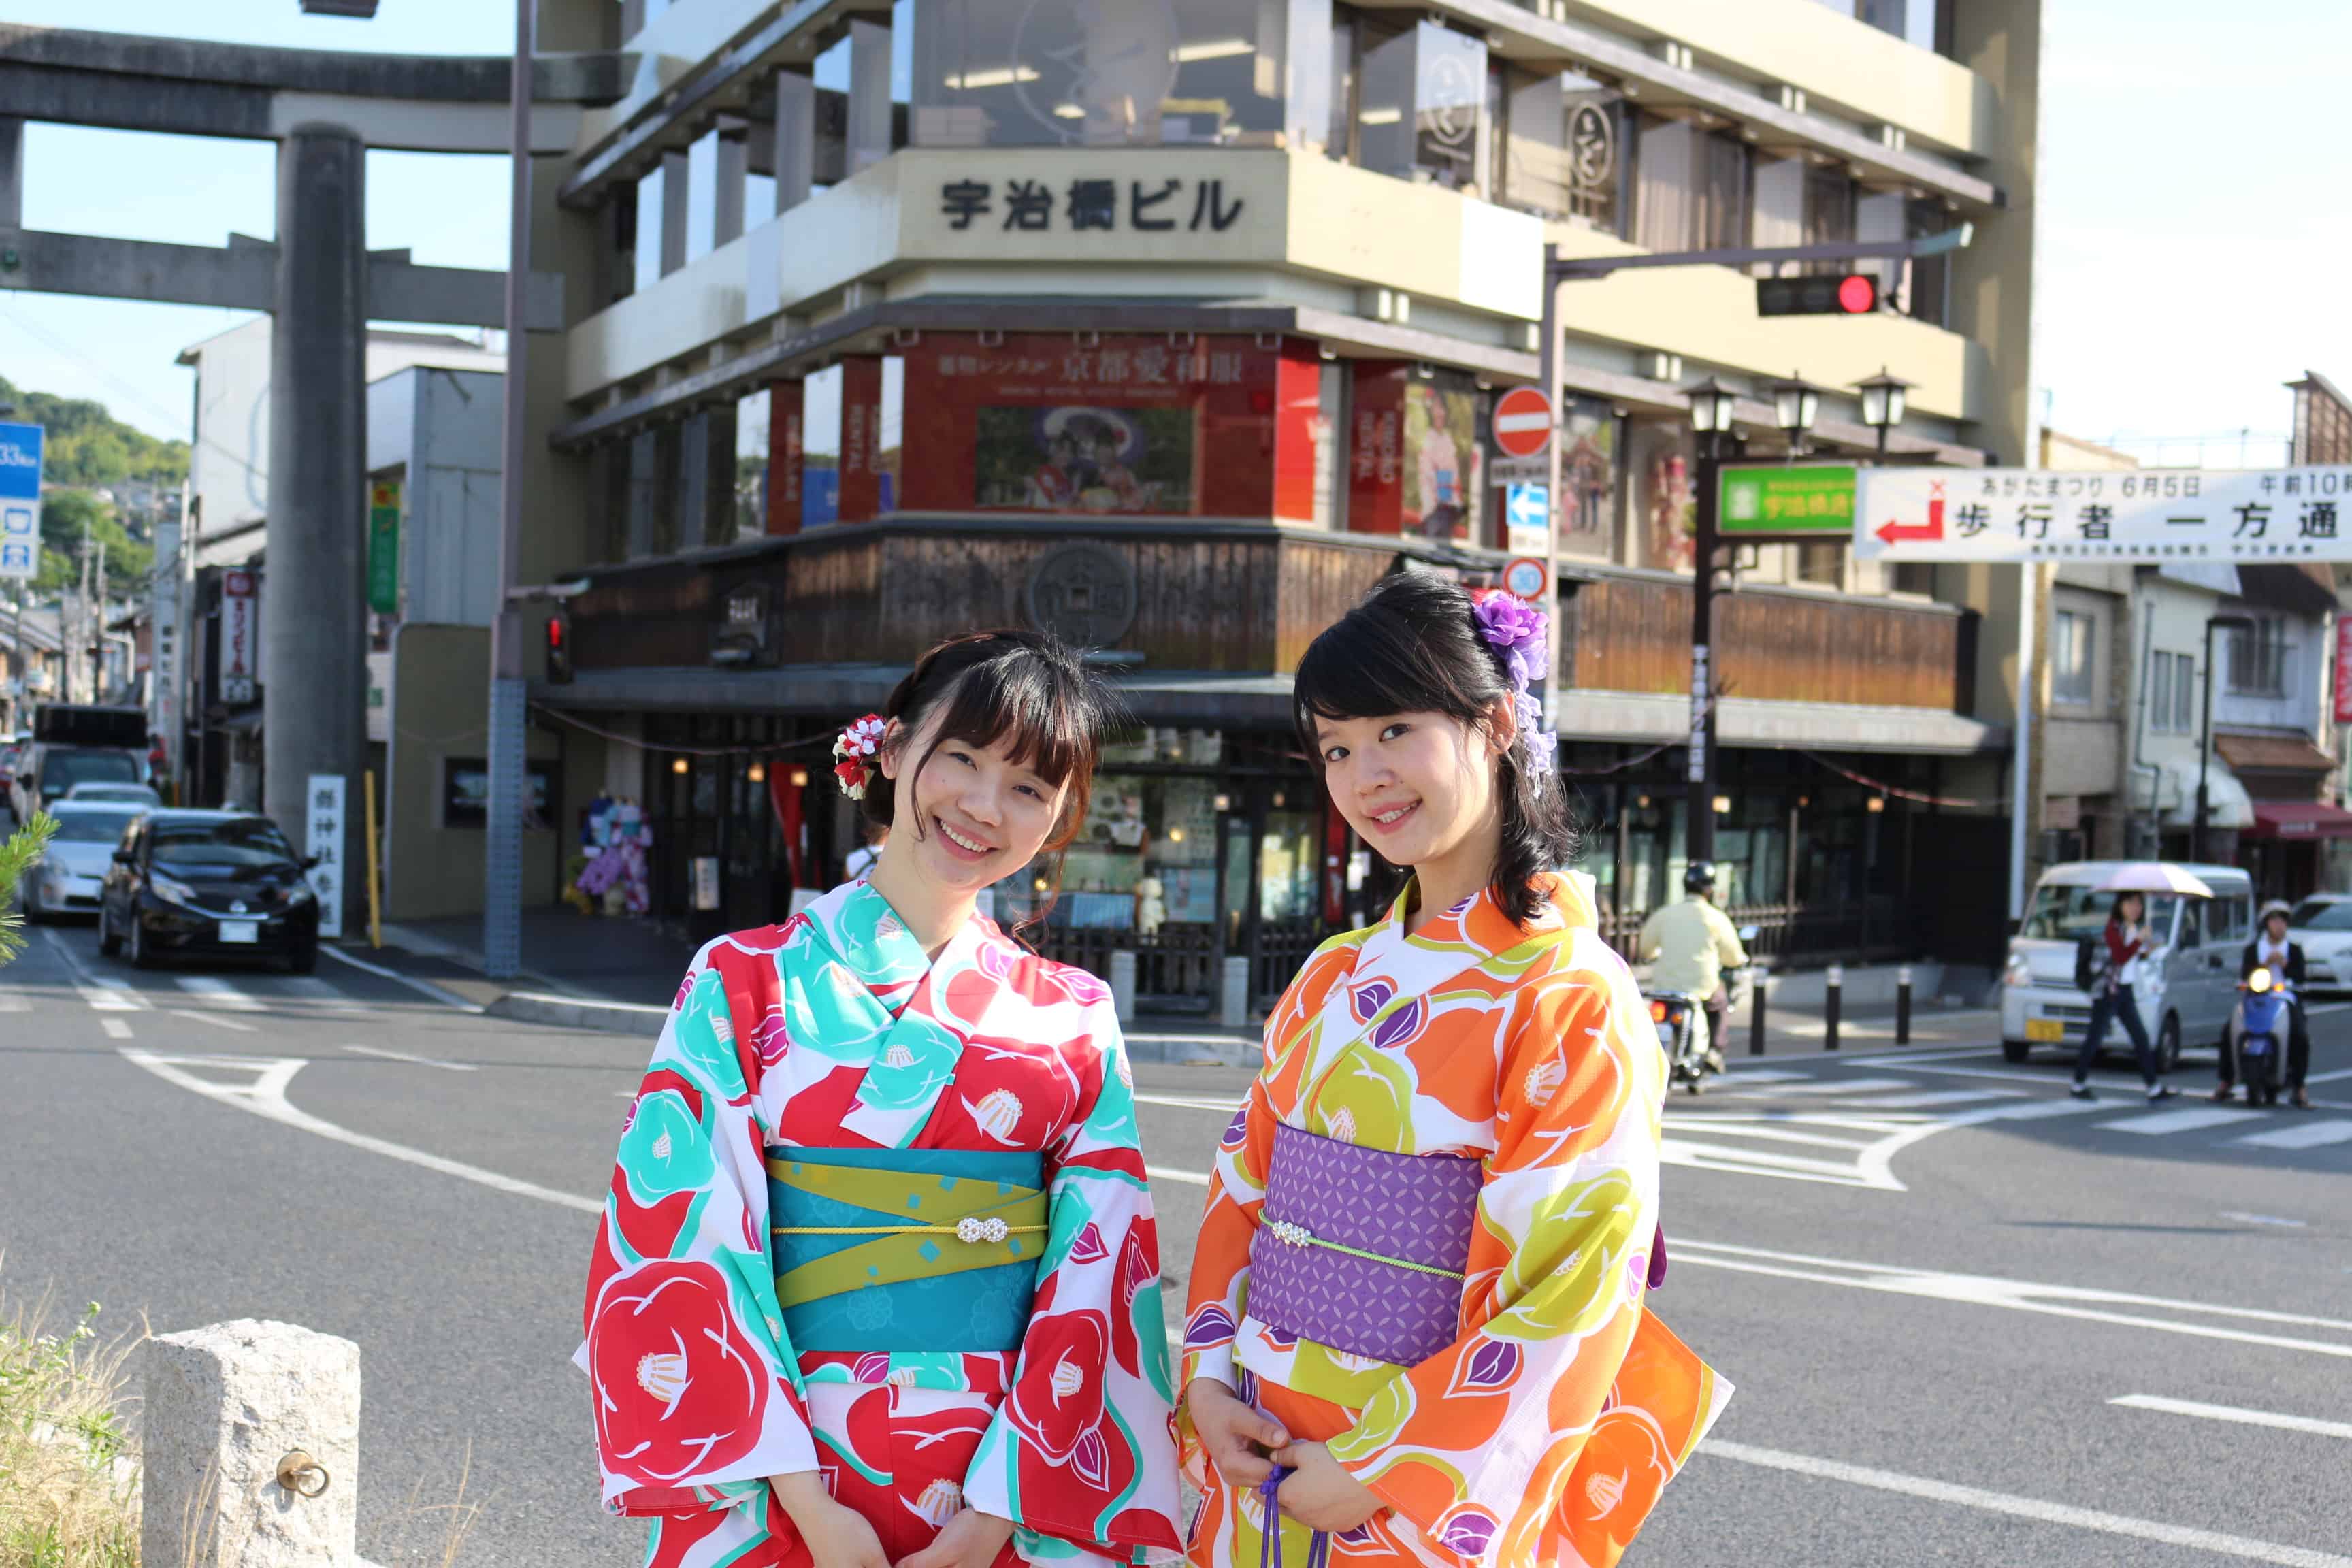 ร้านเช่ากิโมโนแห่งแรกในเมืองอุจิ (Uji) จังหวัดเกียวโต